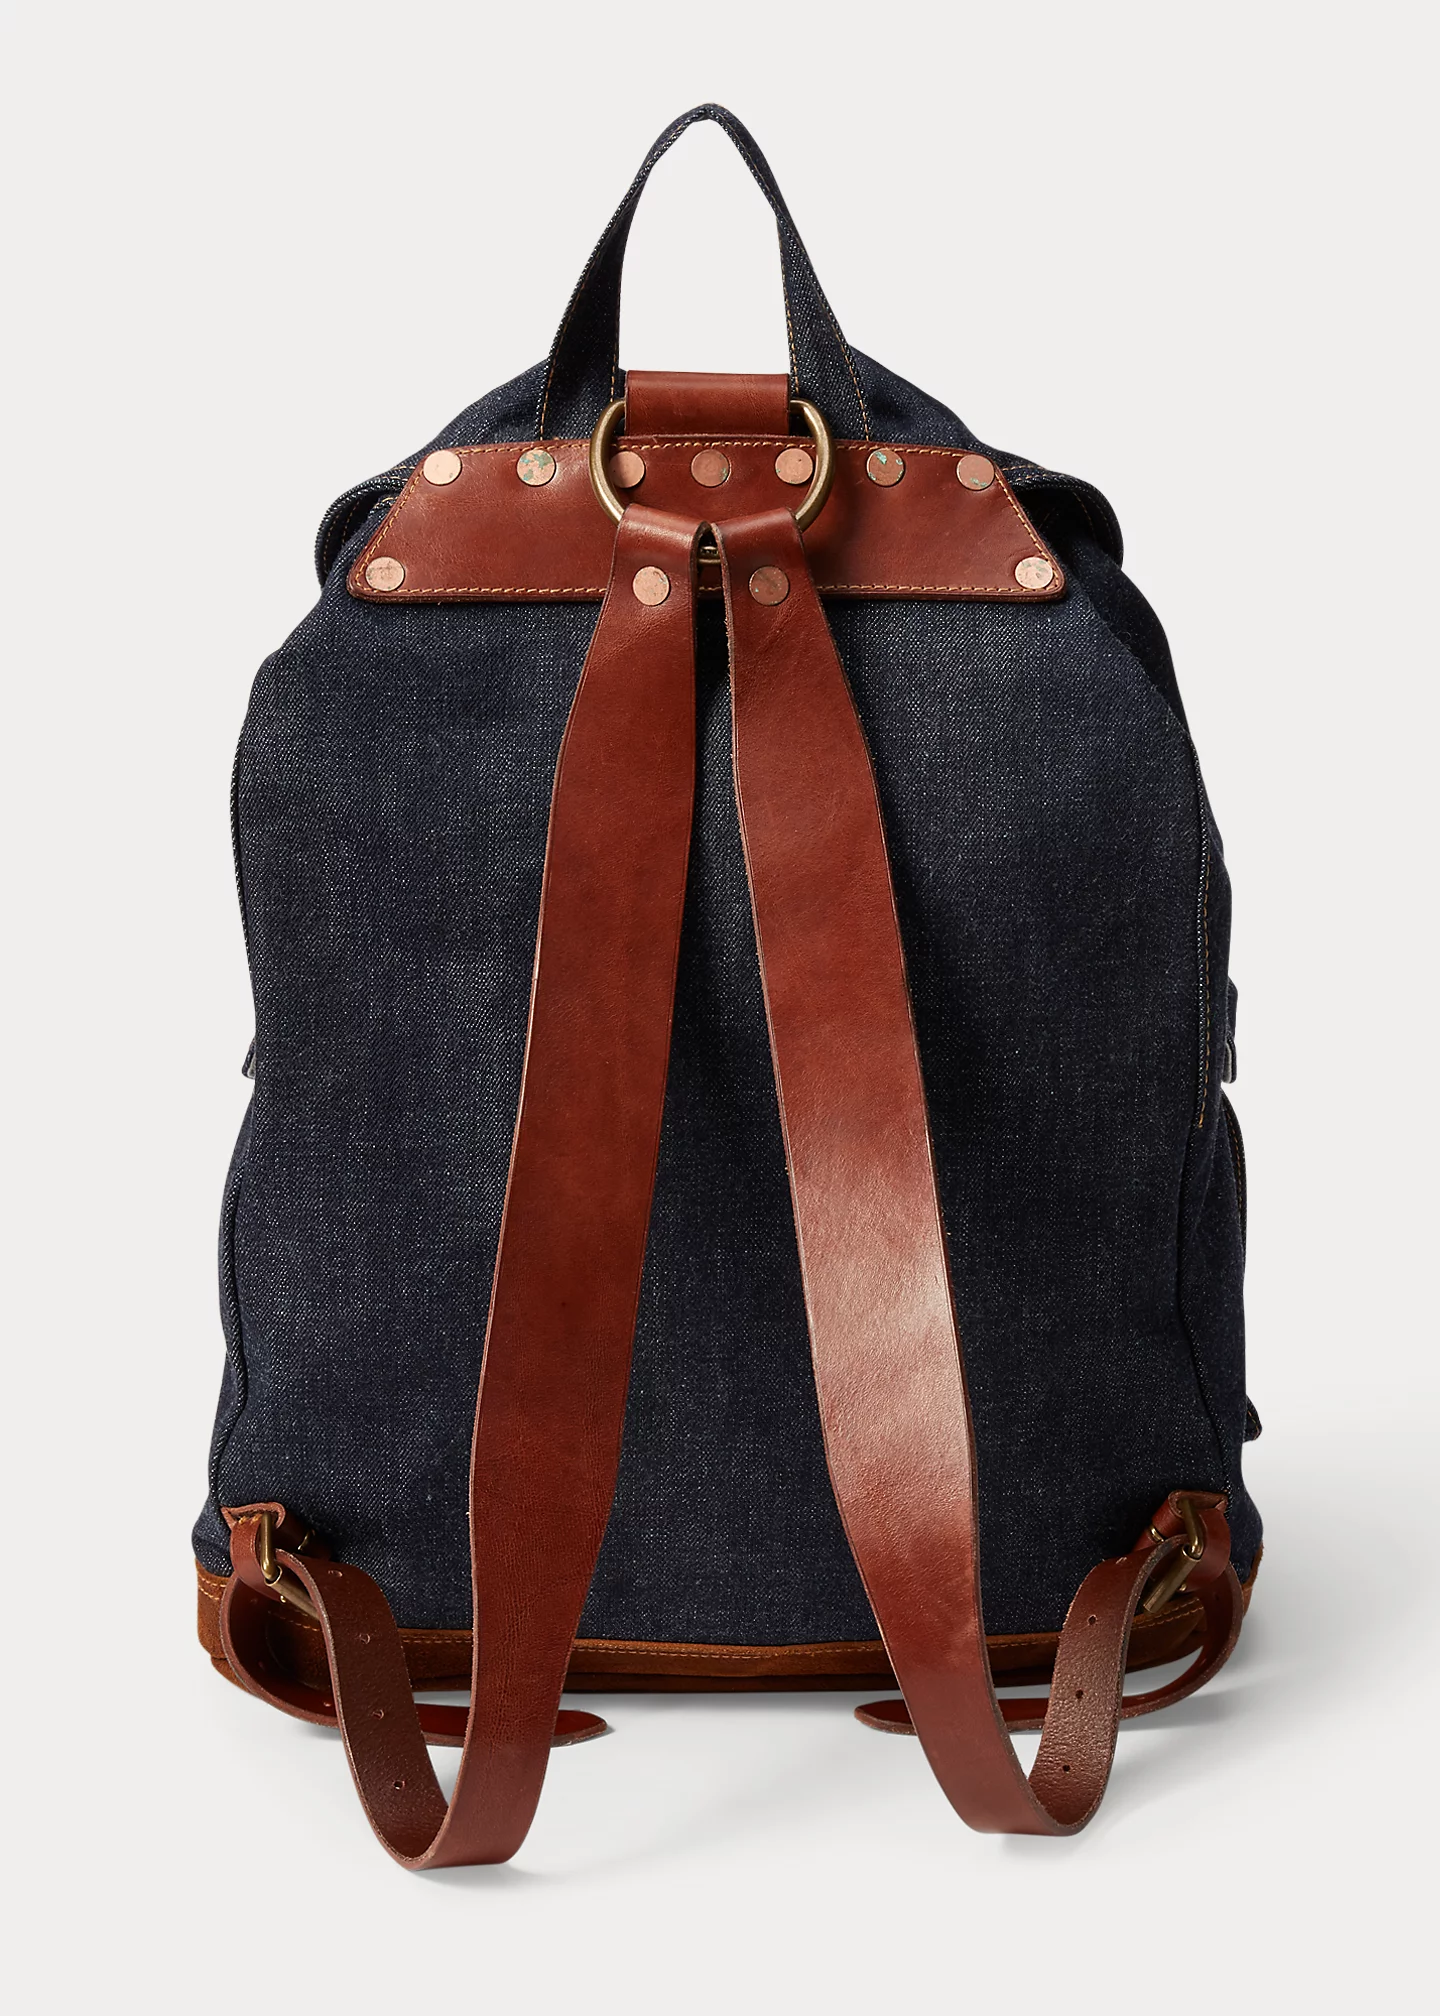 stylish handbagsDenim Rucksack-,$48.39-1